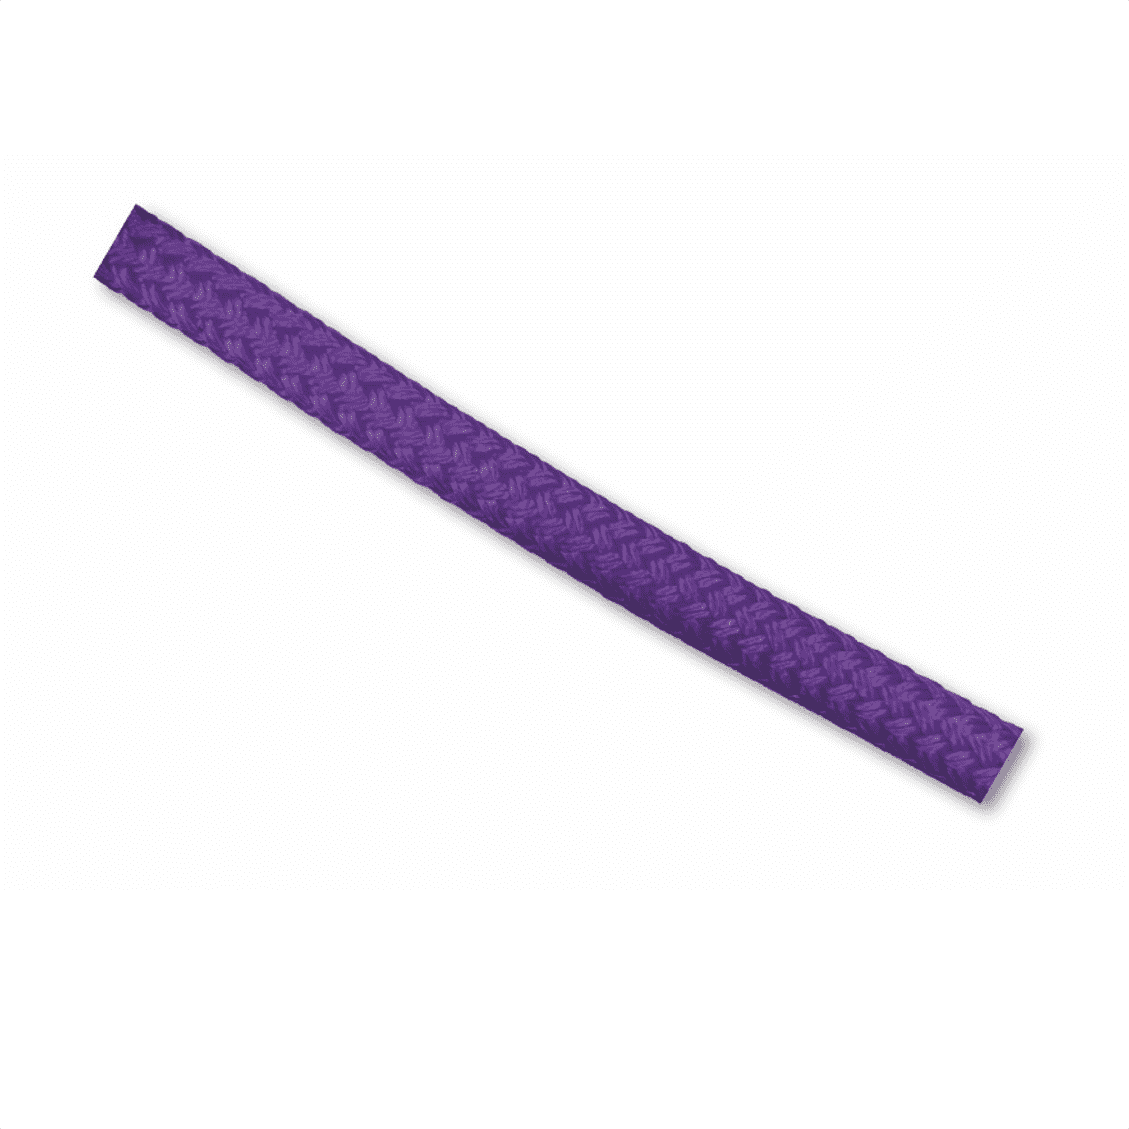 THLR2-12 Rigging Rope Treehog Purple - 12mm Diameter